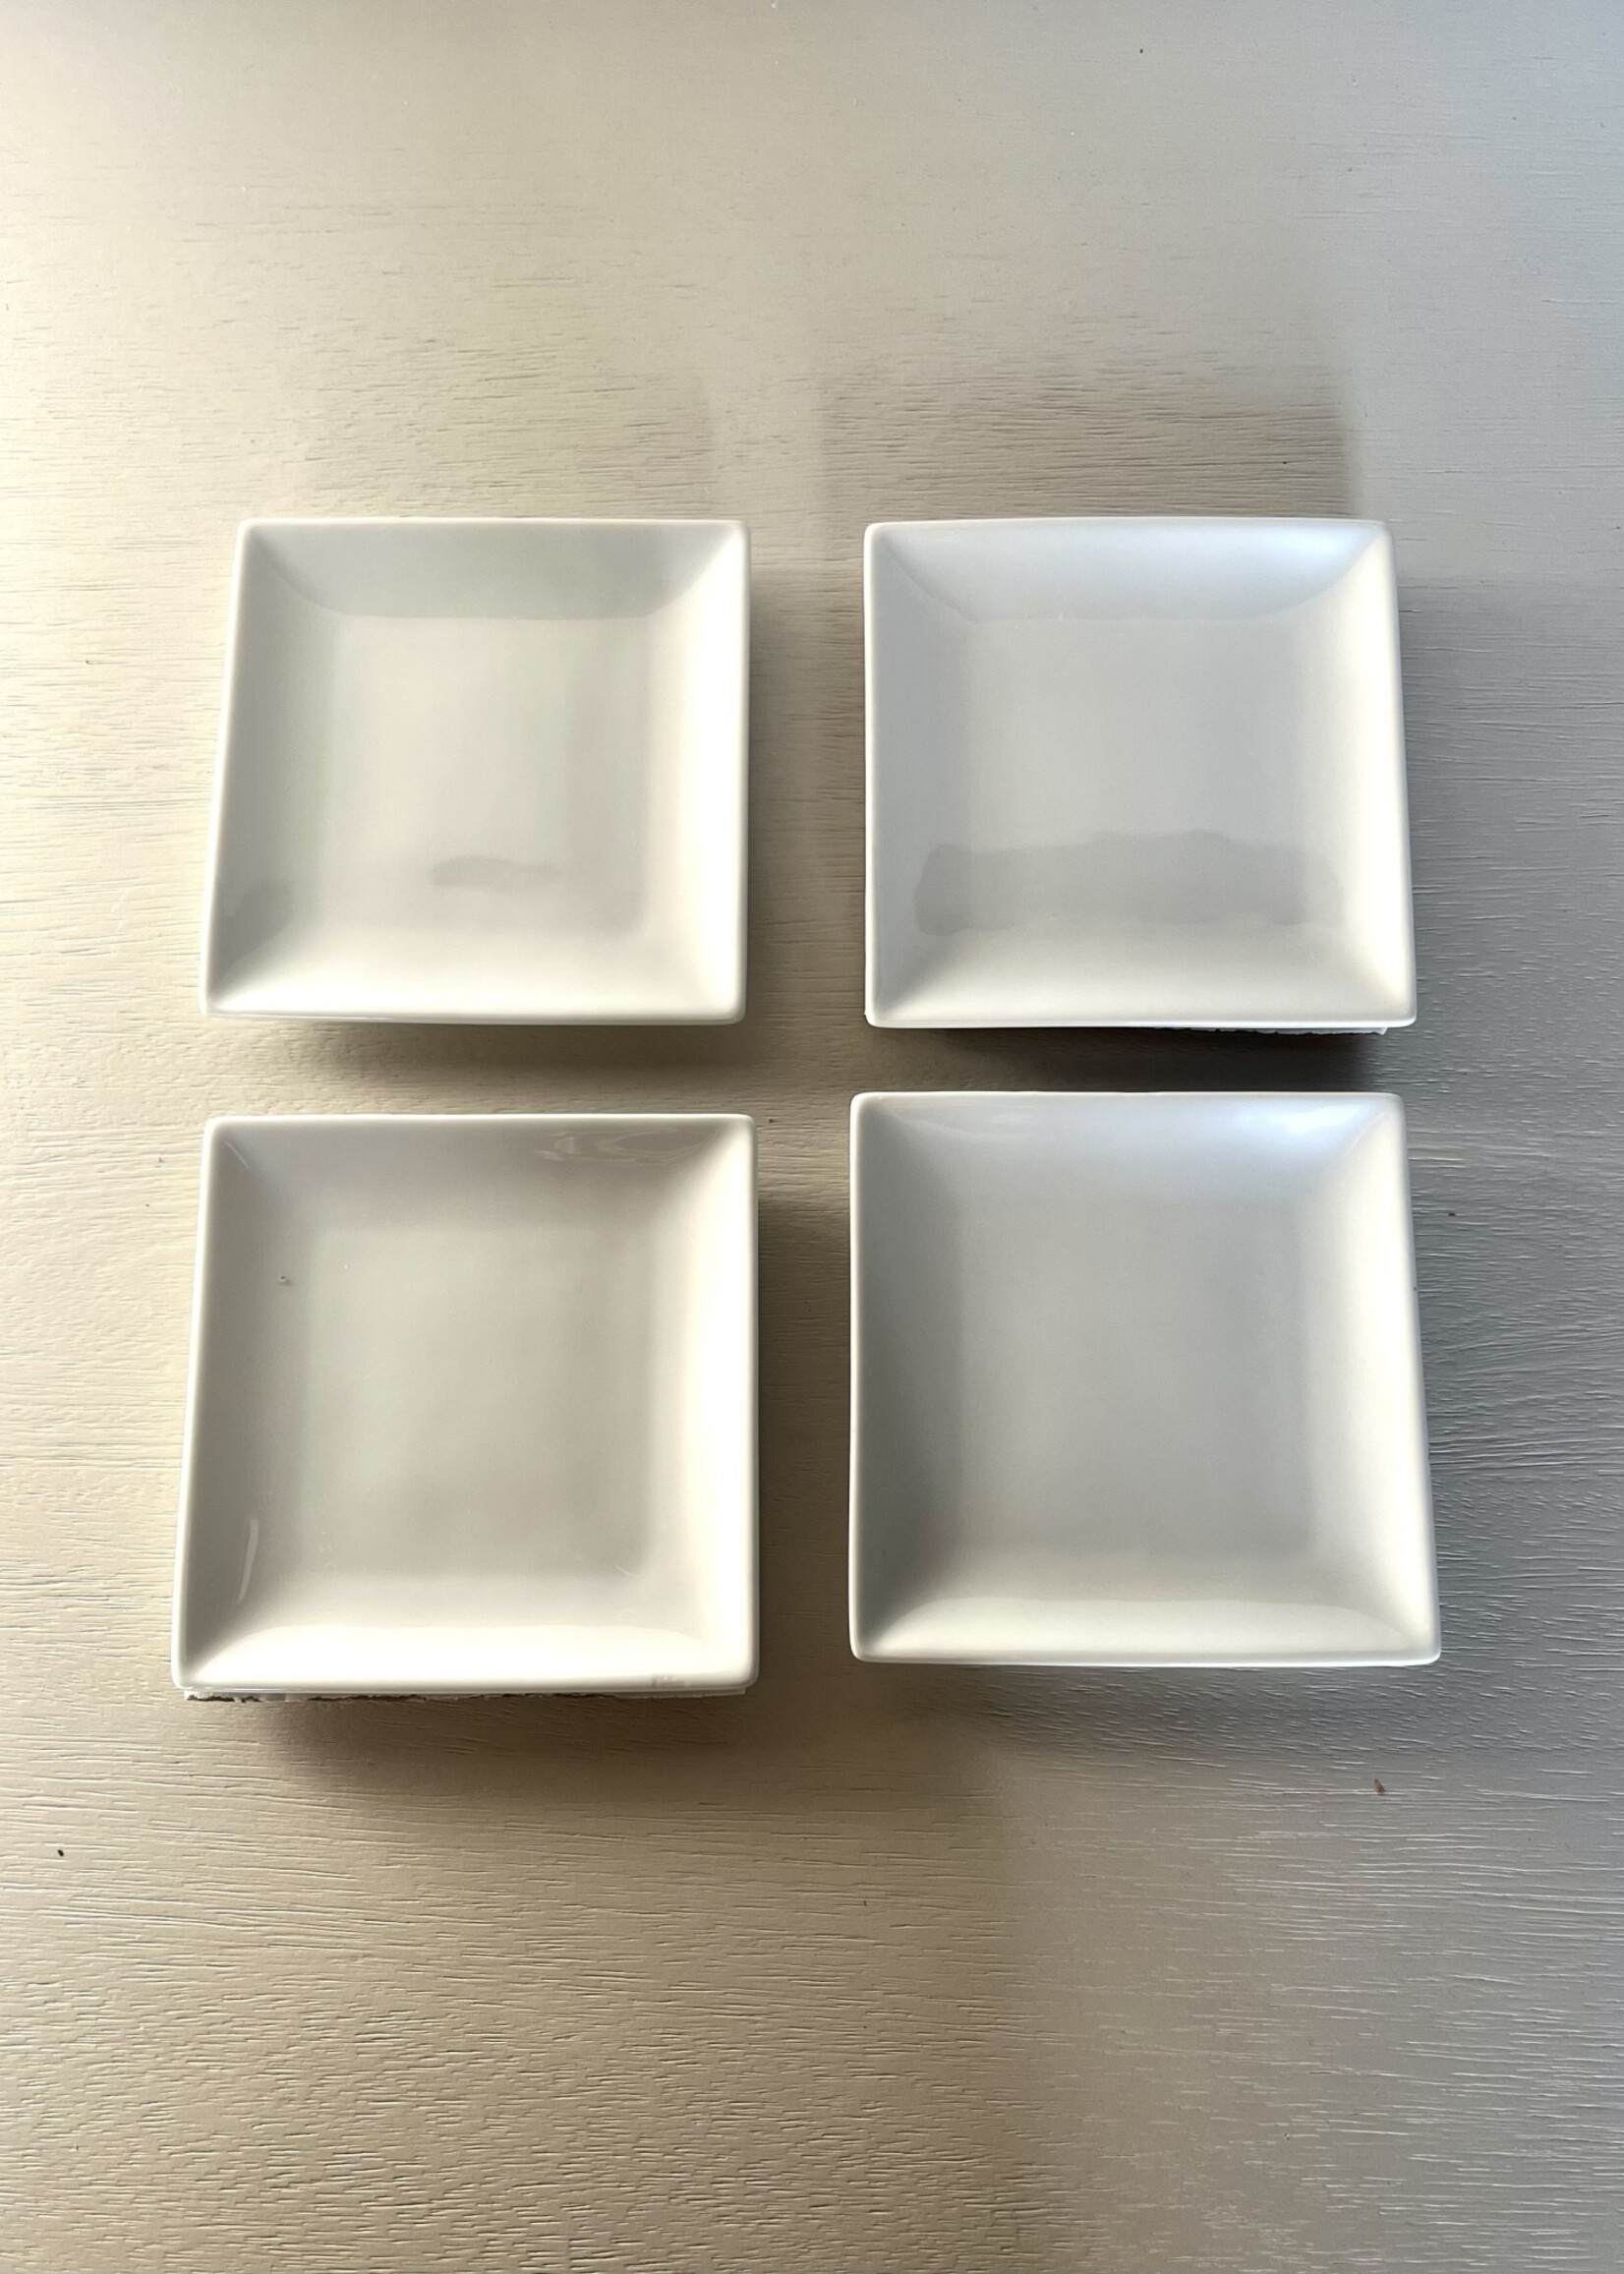 square ceramic plates